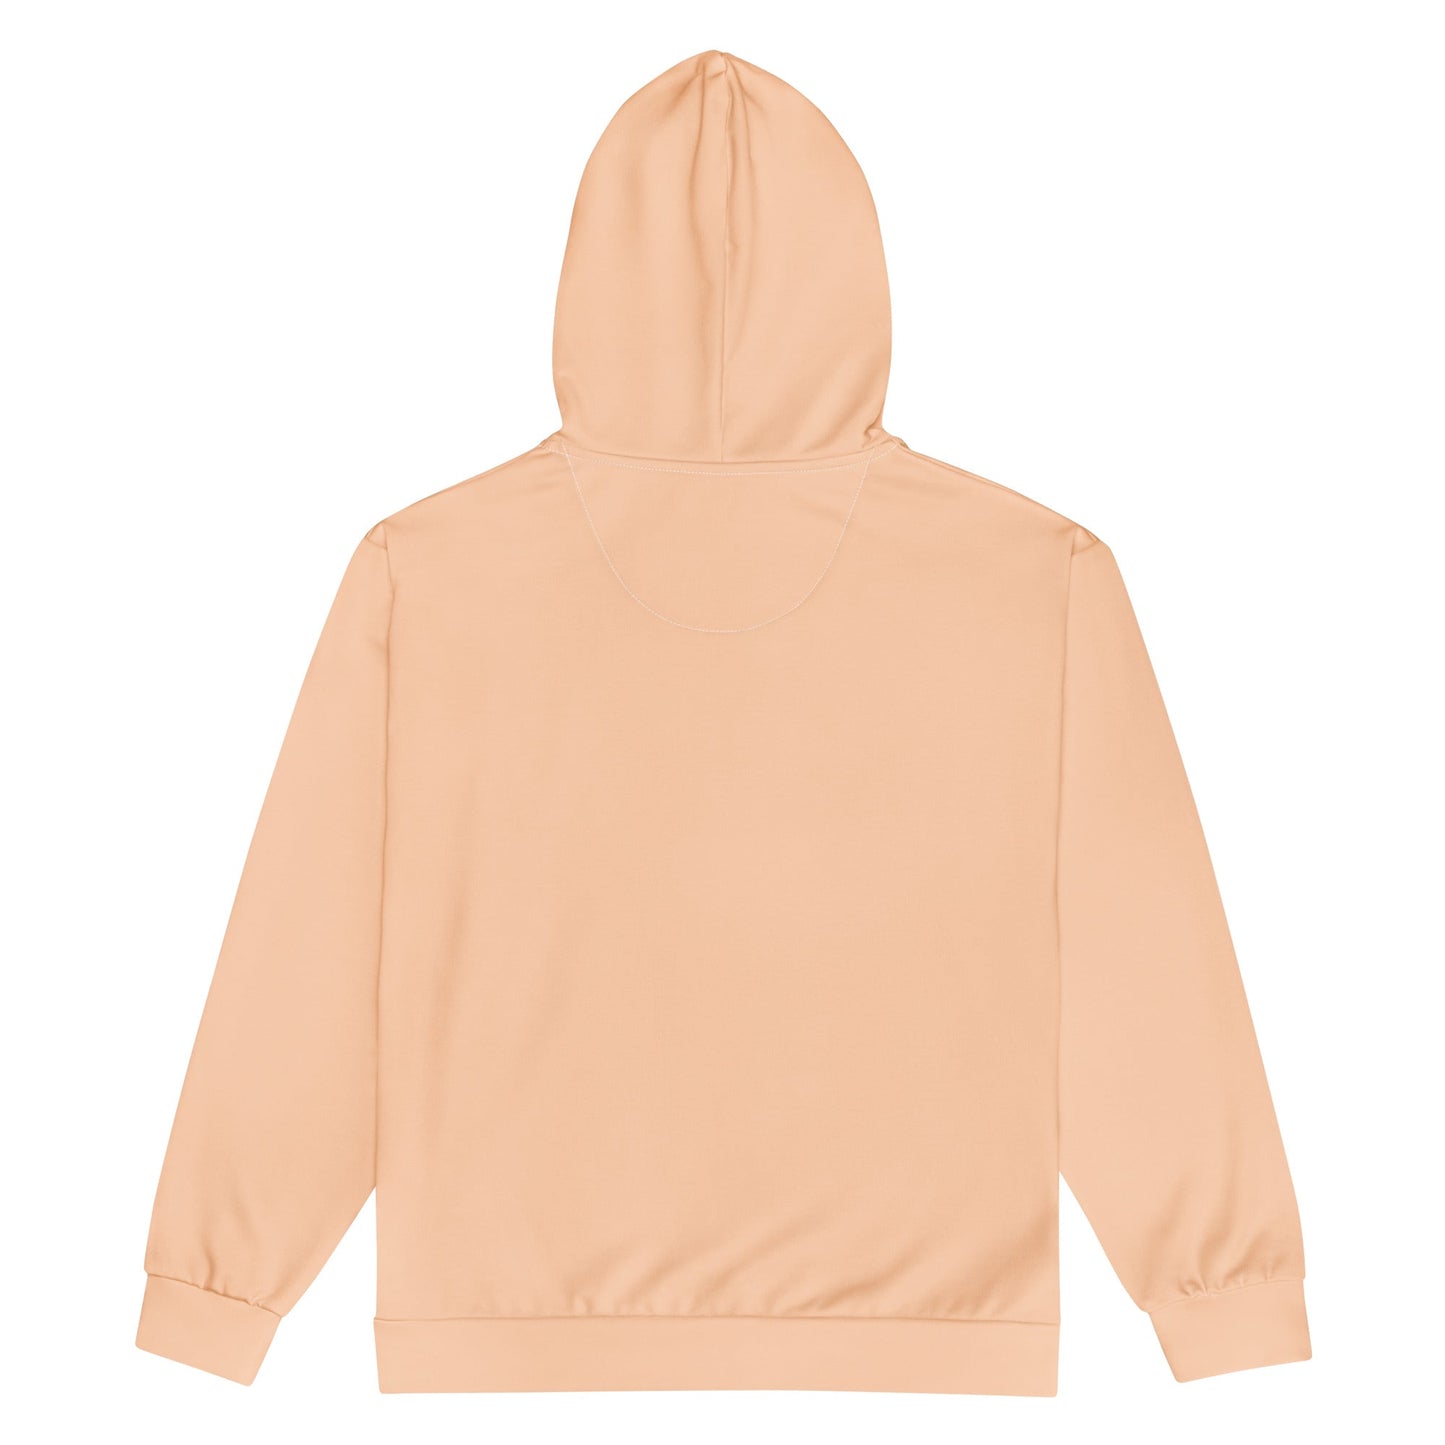 premium-unisex-zip-hoodie-orange-sand